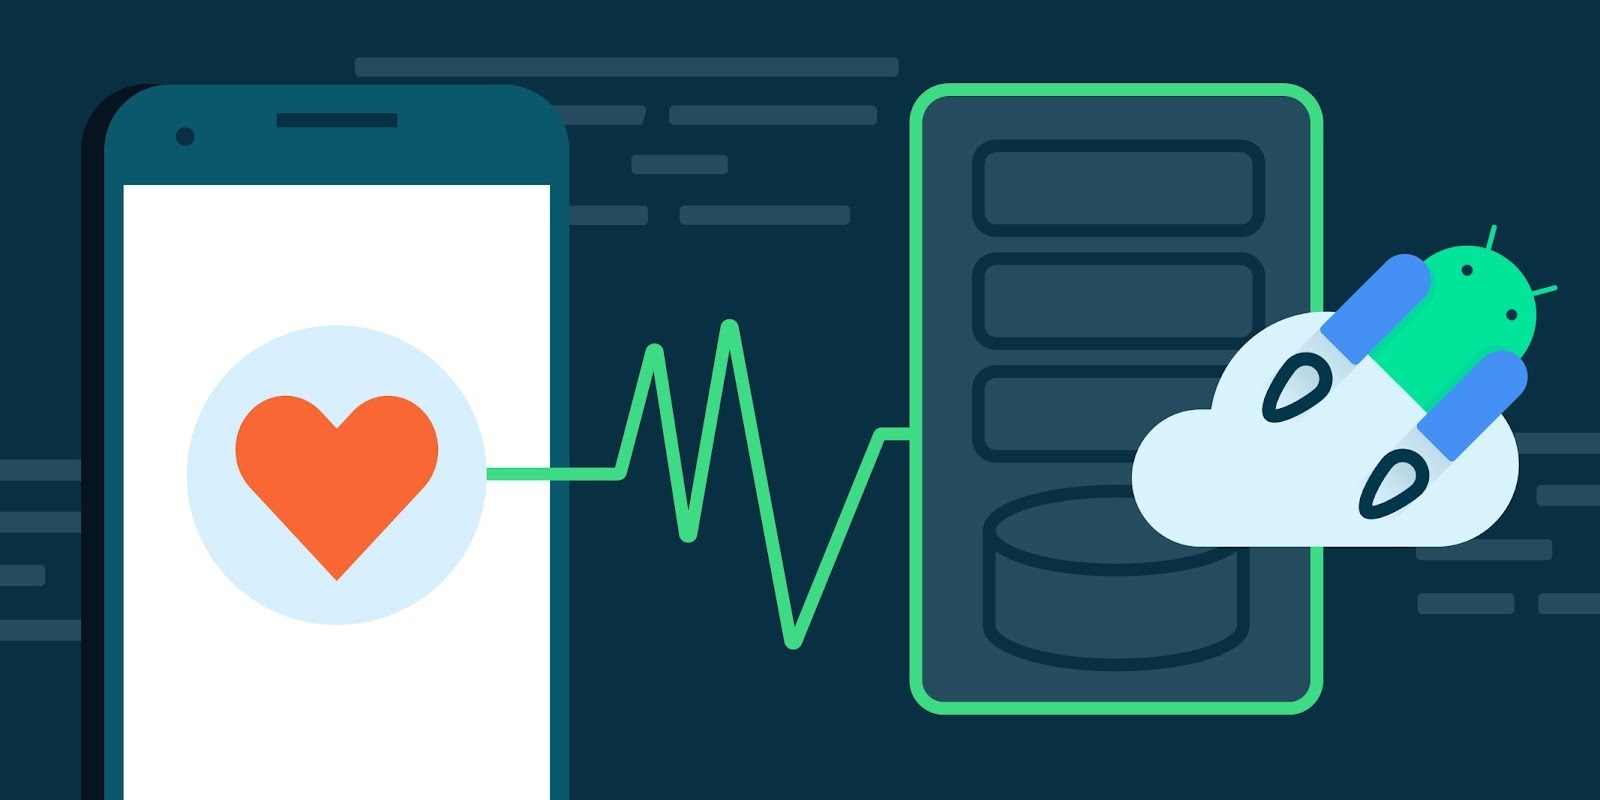 Google ve Samsung'dan yeni sağlık uygulaması: Health Connect